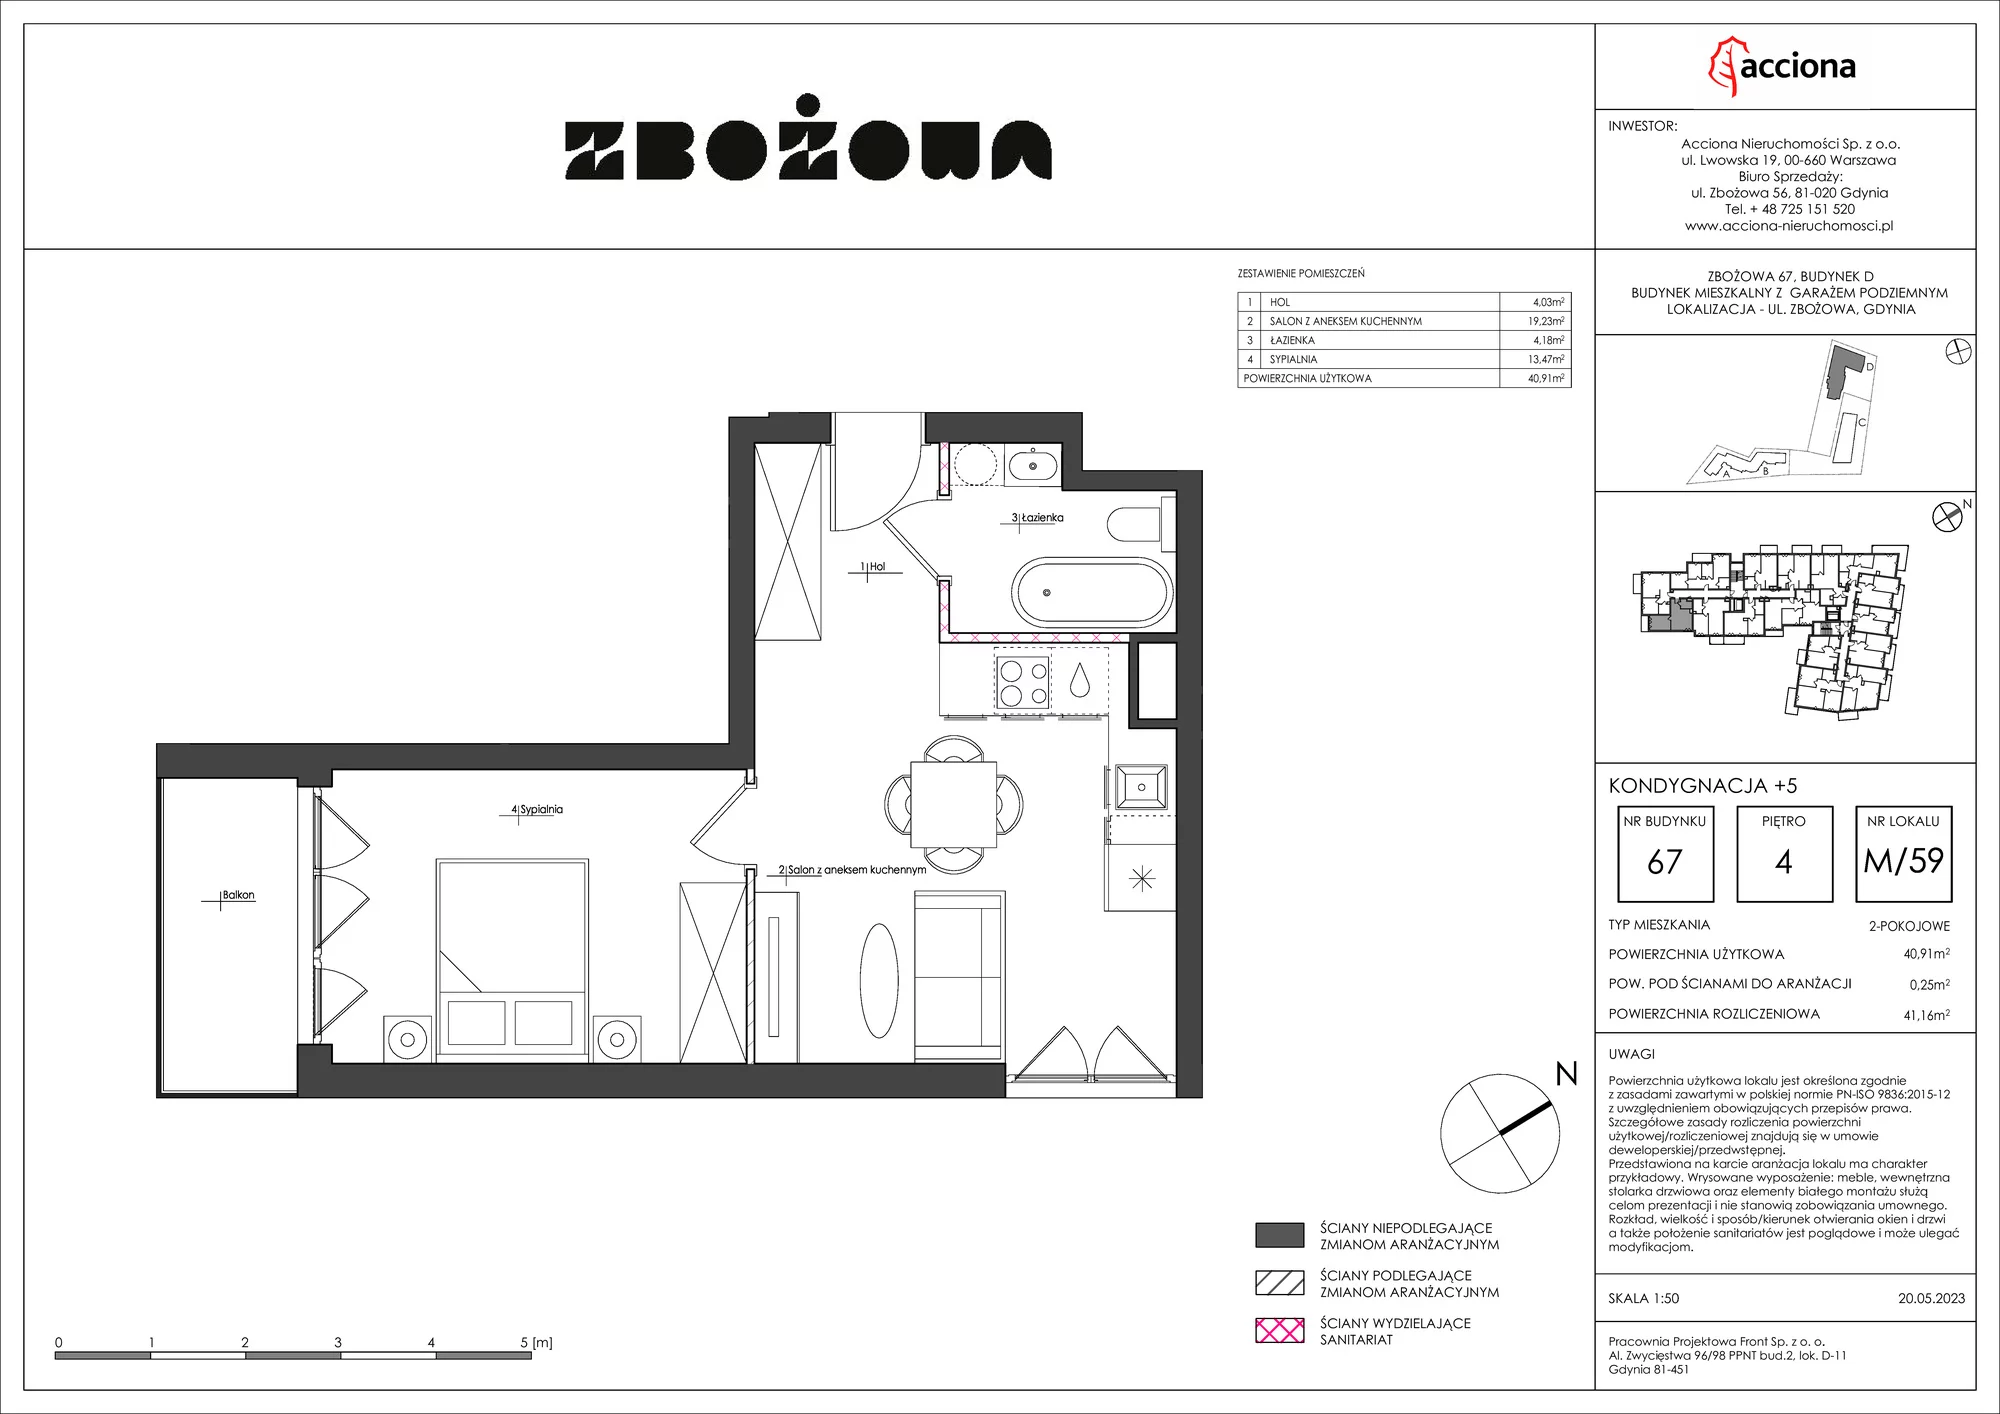 Mieszkanie 41,16 m², piętro 4, oferta nr 67.59, Zbożowa, Gdynia, Cisowa, ul. Zbożowa